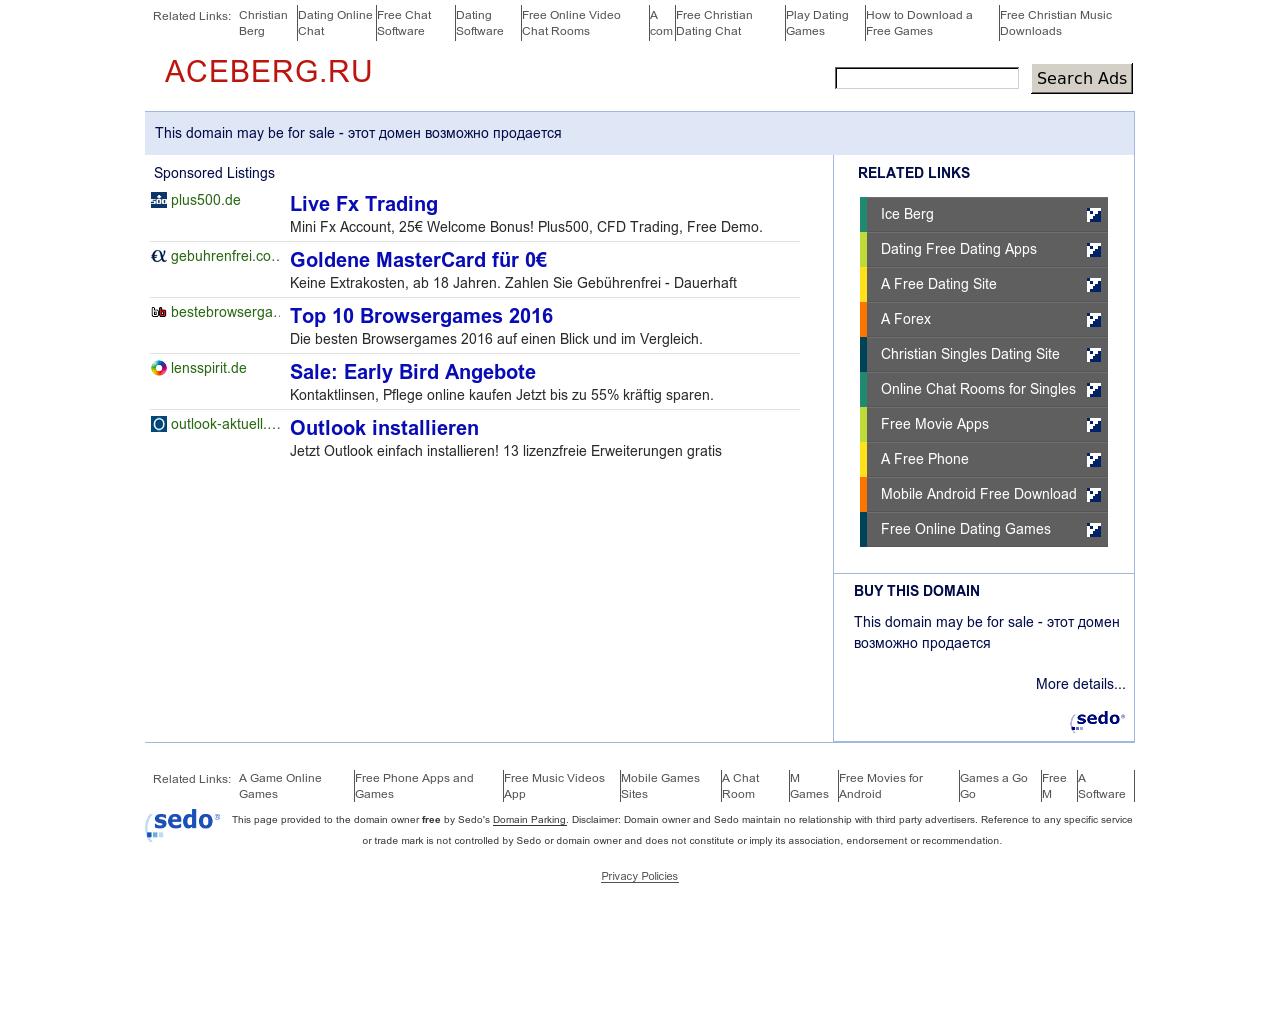 Изображение сайта aceberg.ru в разрешении 1280x1024